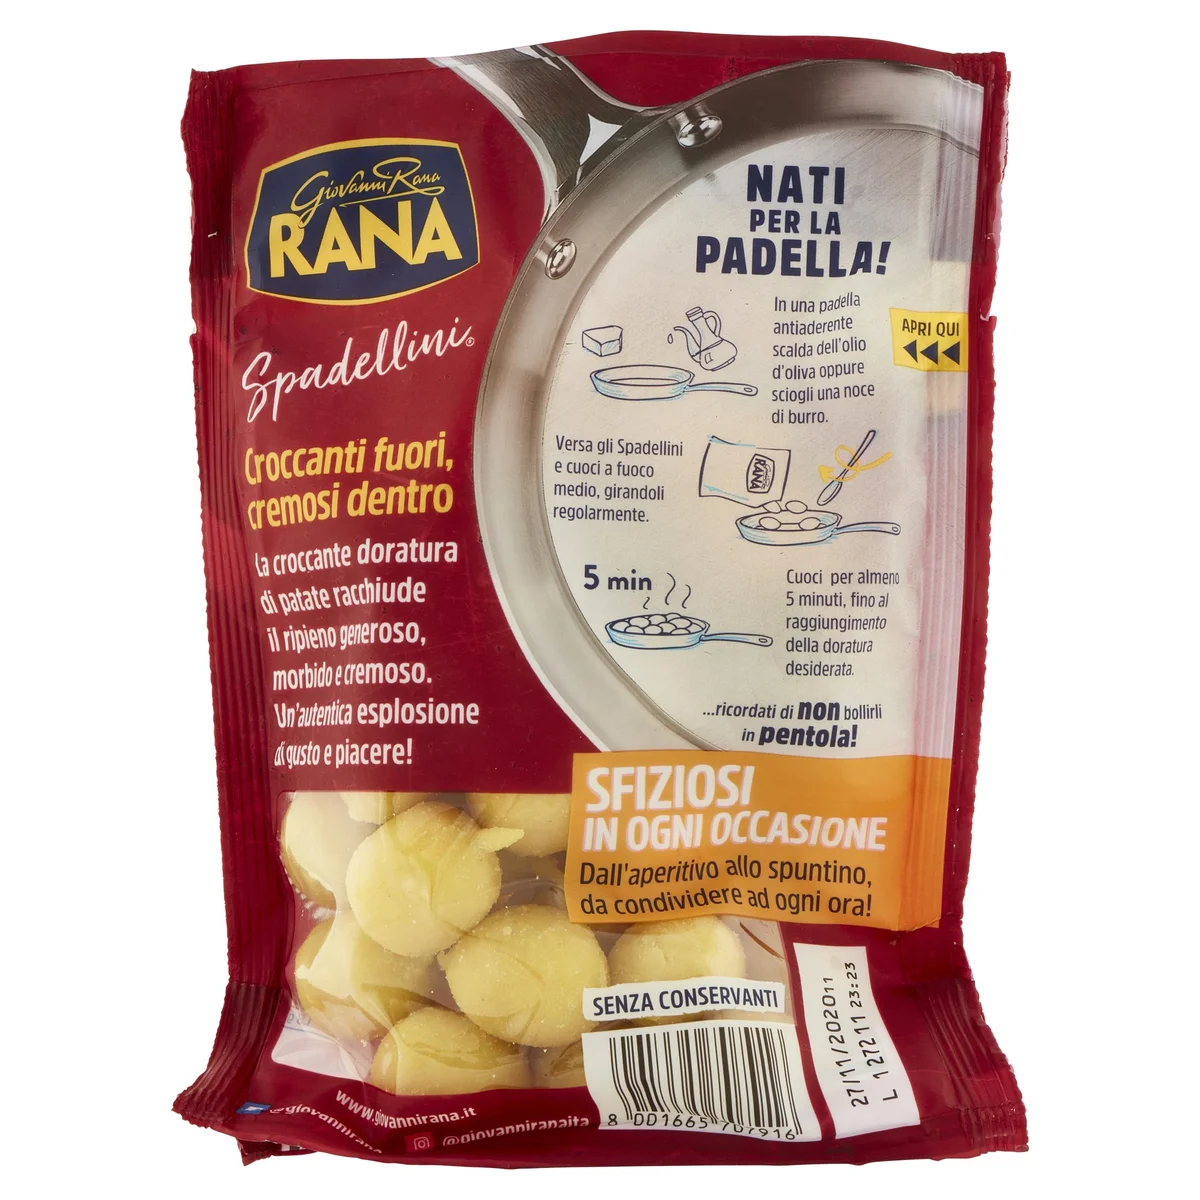 Giovanni Rana Spadellini Crema di formaggi 280 g